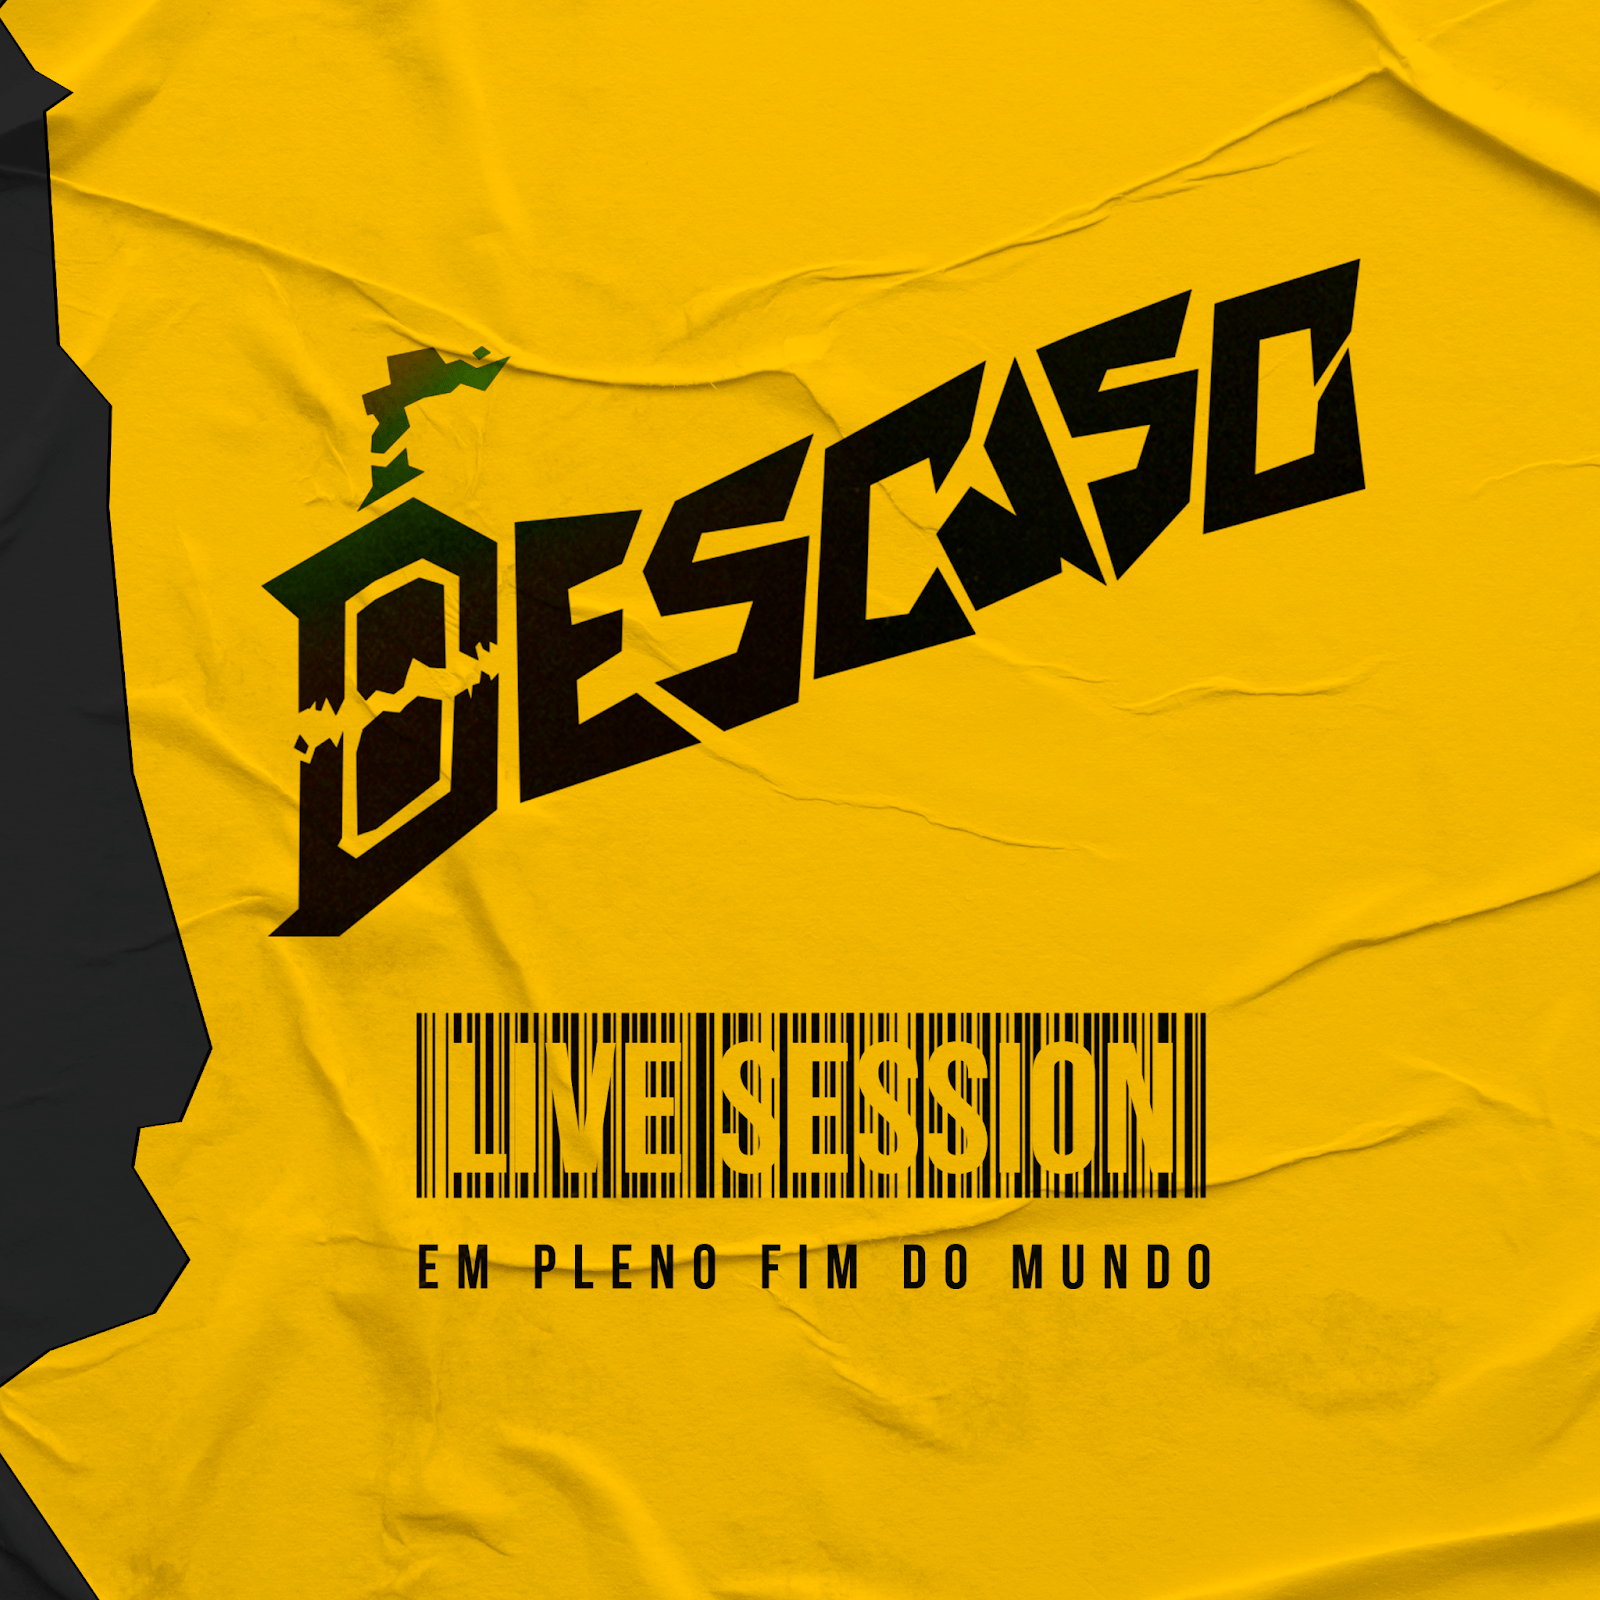 Descaso lança EP “Live Session Em Pleno Fim Do Mundo”